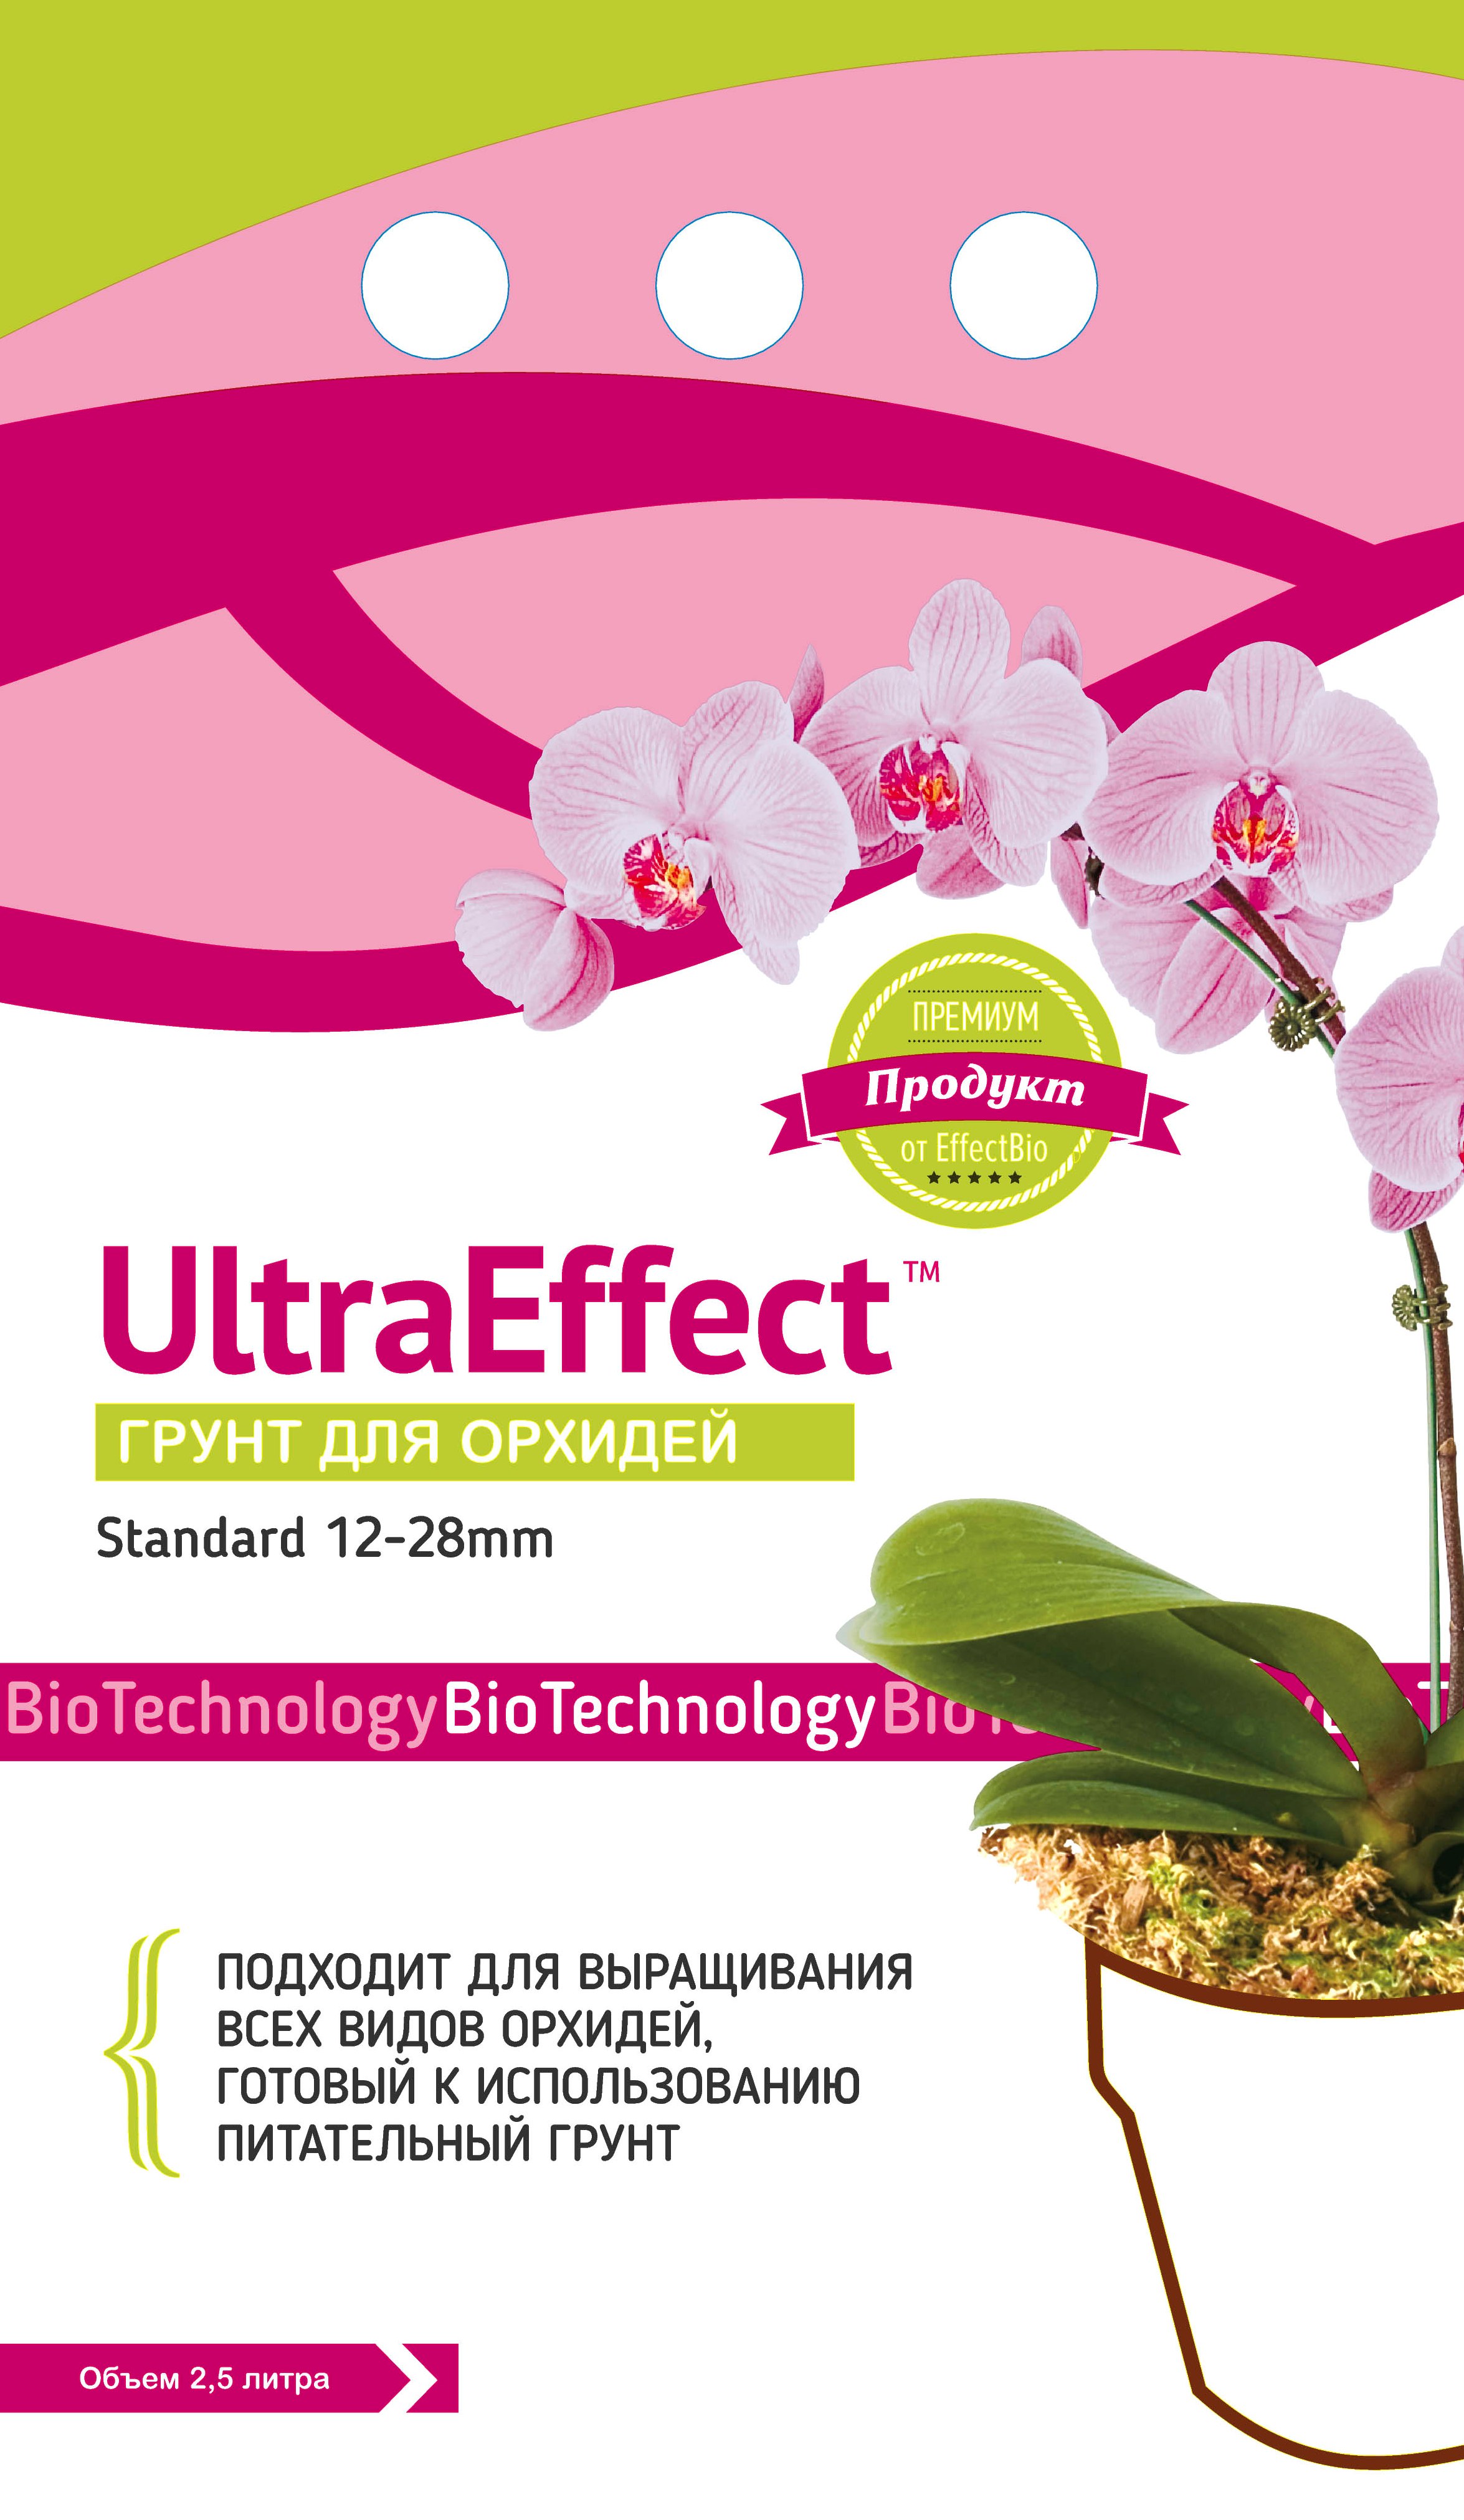 Грунт для орхидей Ультра Эффект стандарт 12-28мм 2.5 литра UltraEffect БиоАбсолют ЭффектБио эффект+ effect+ bio line